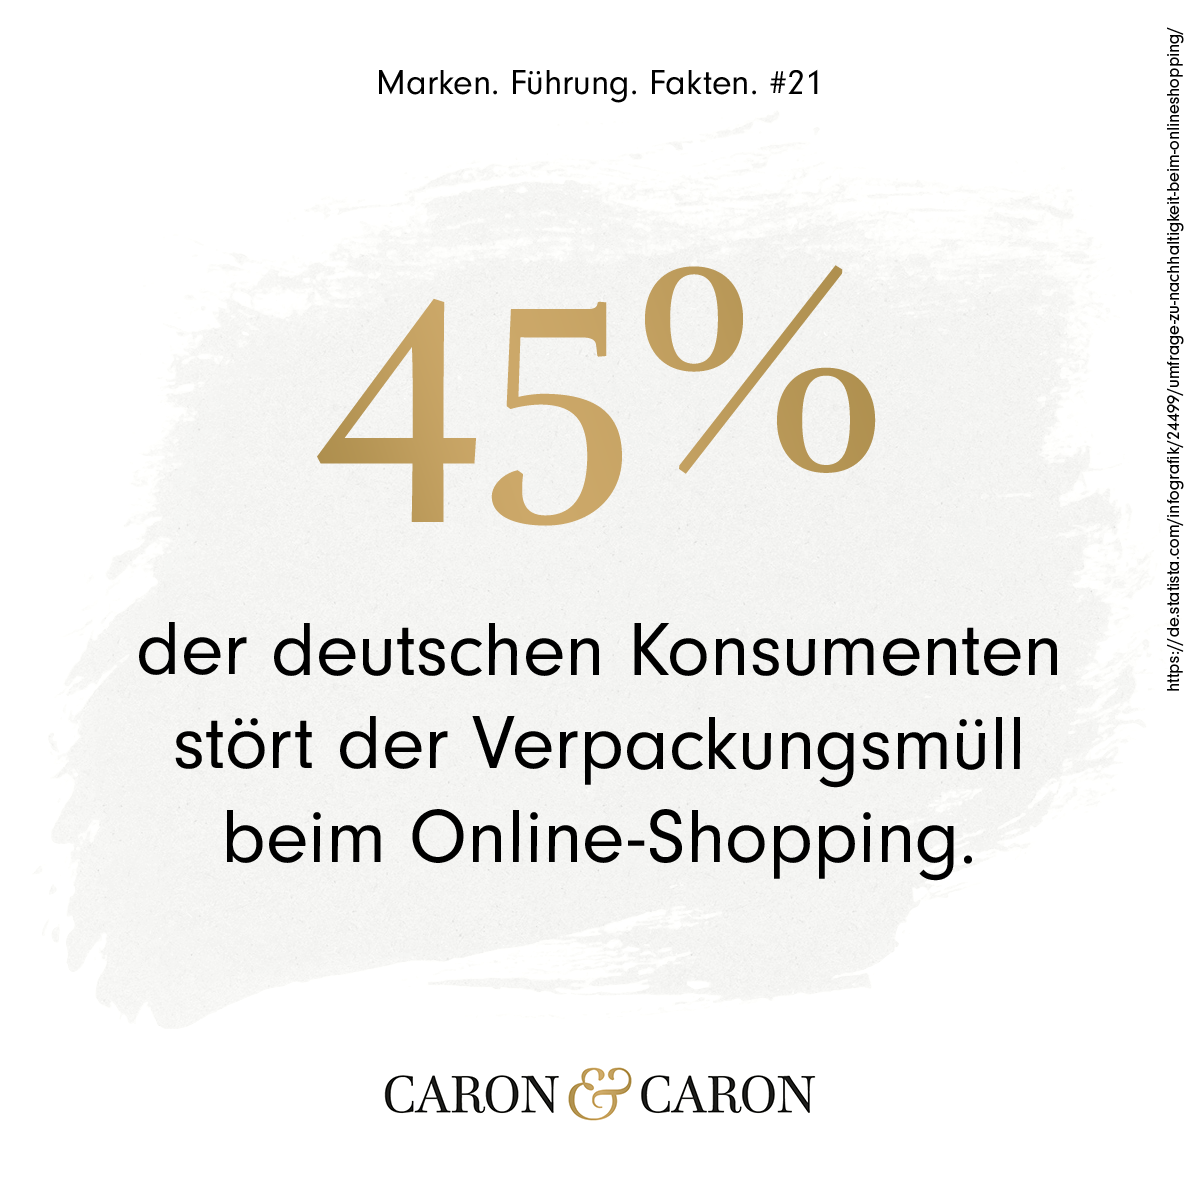 45% der deutschen Konsumenten stört der Verpackungsmüll beim Online-Shopping